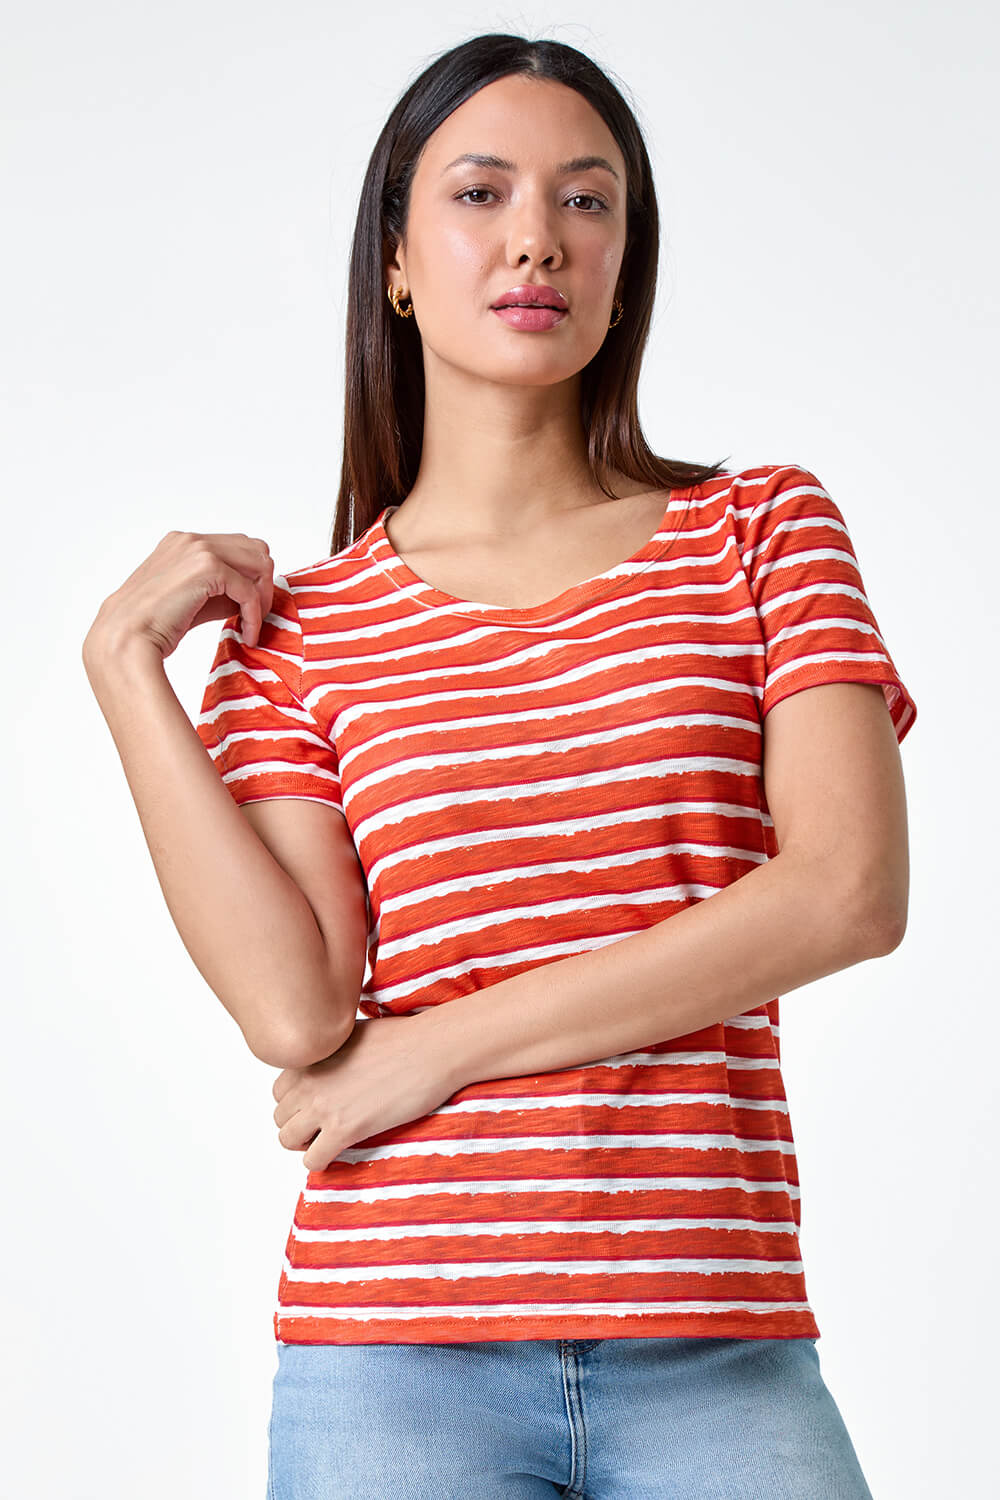 ORANGE Burnout Stripe Print T-Shirt, Image 4 of 5